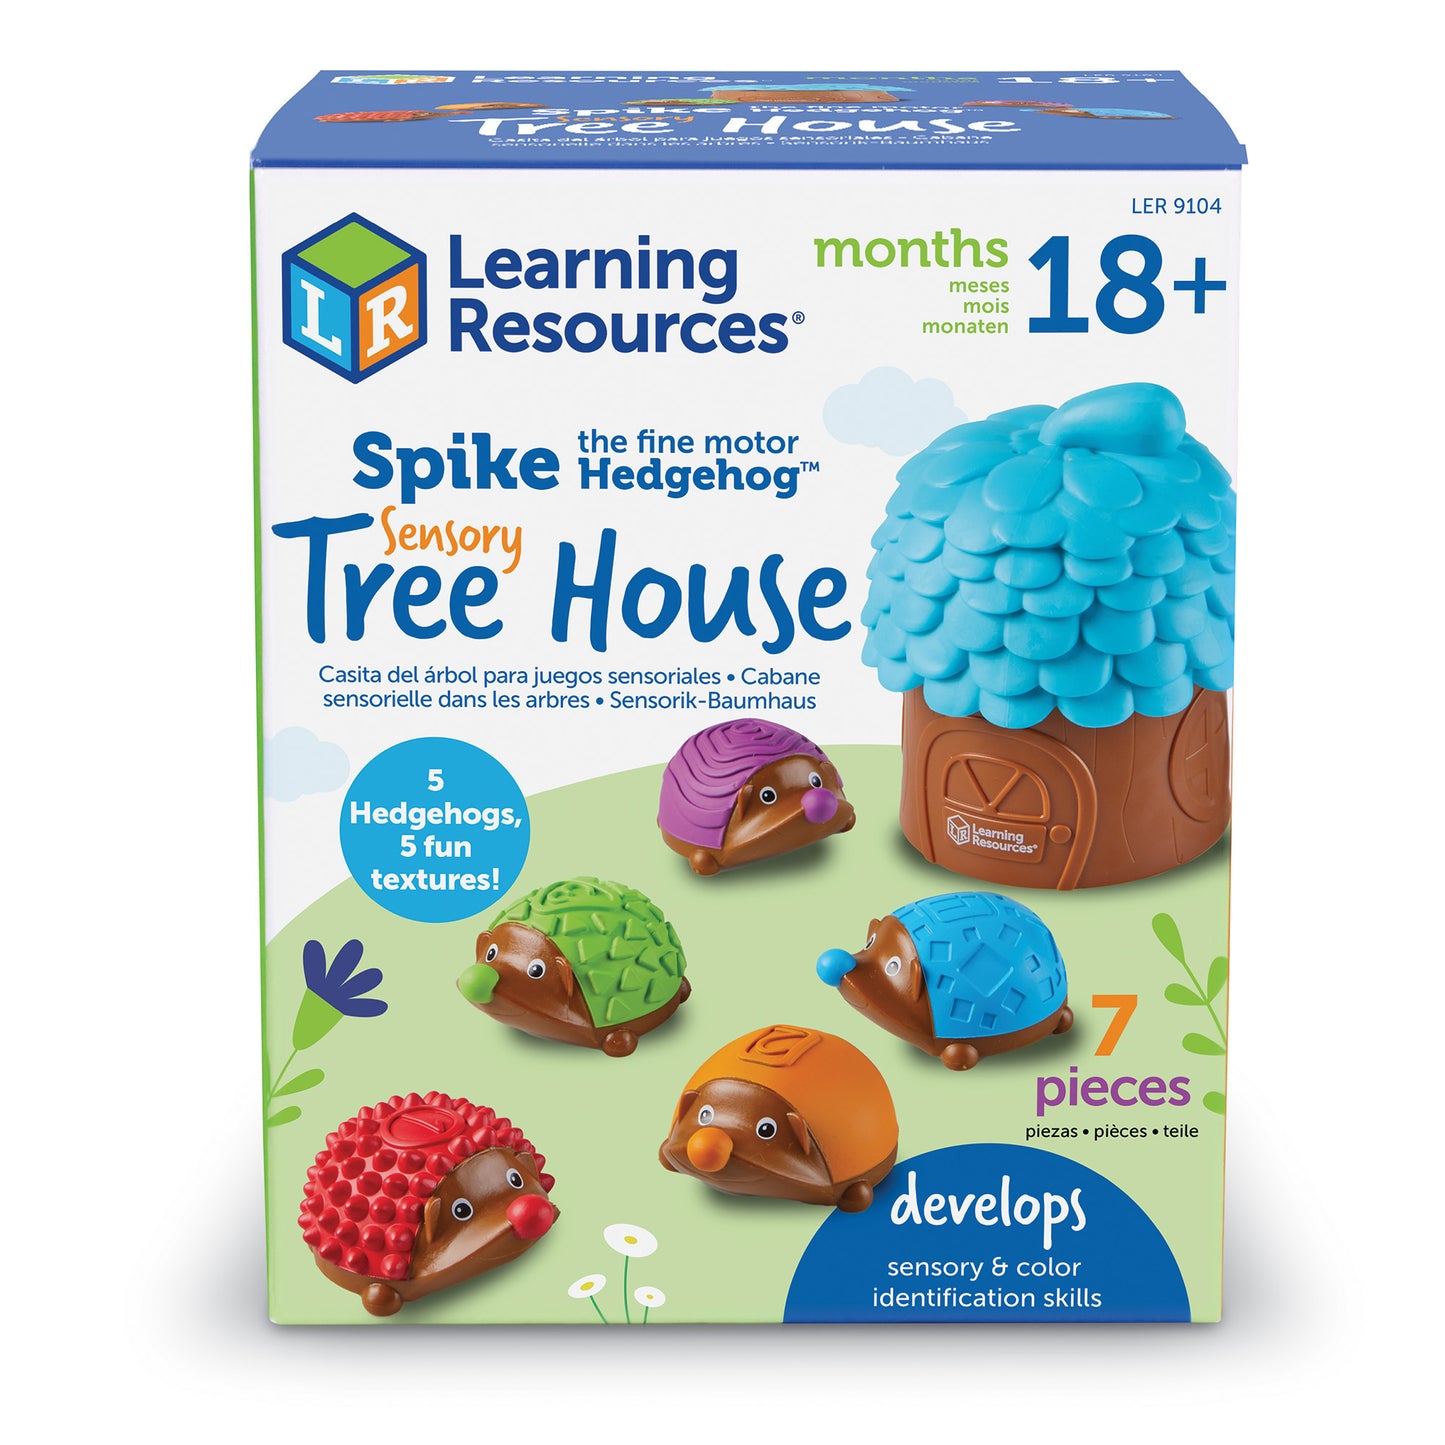 Spike the Fine Motor Hedgehog® Sensory Tree House